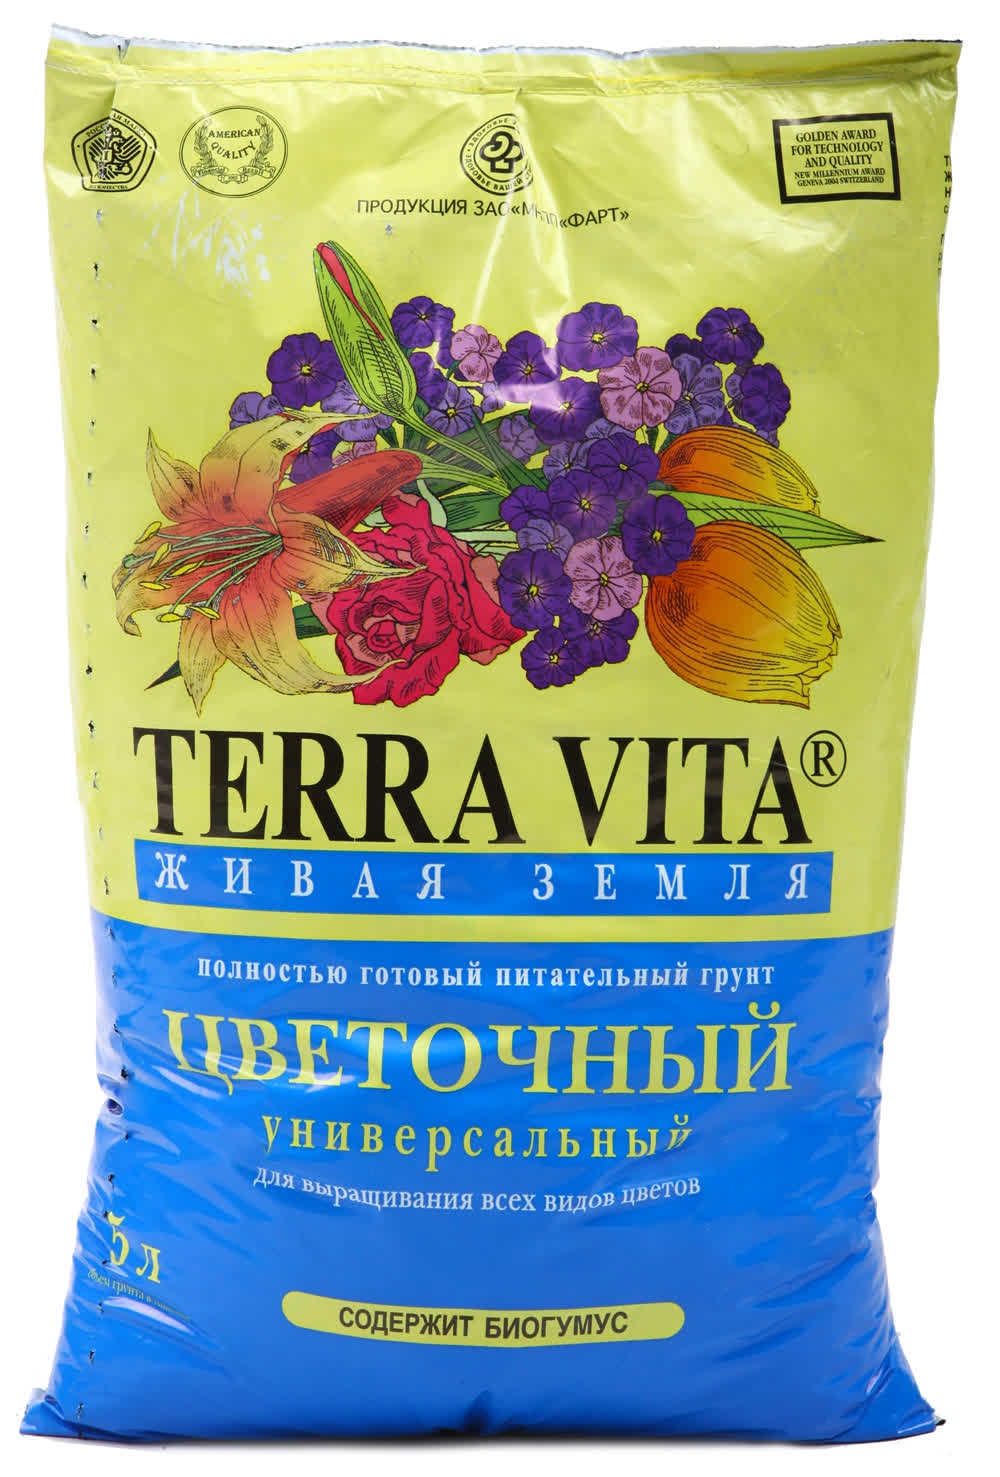 Купить грунт для участка. Грунт цветочный универсальный Terra Vita.